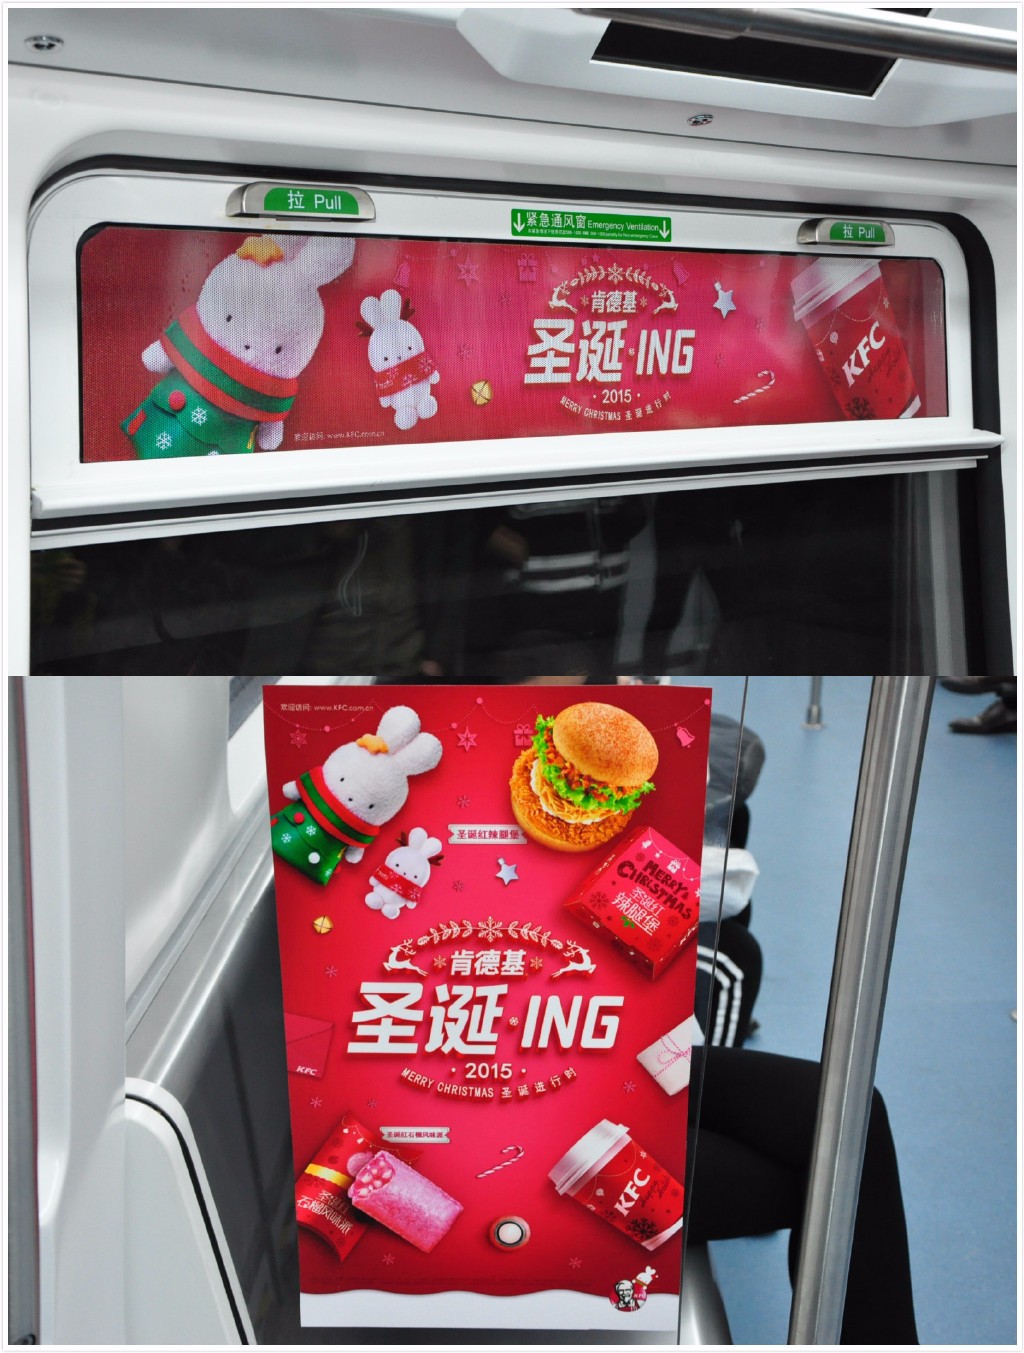 深圳11号线地铁广告的广告形式